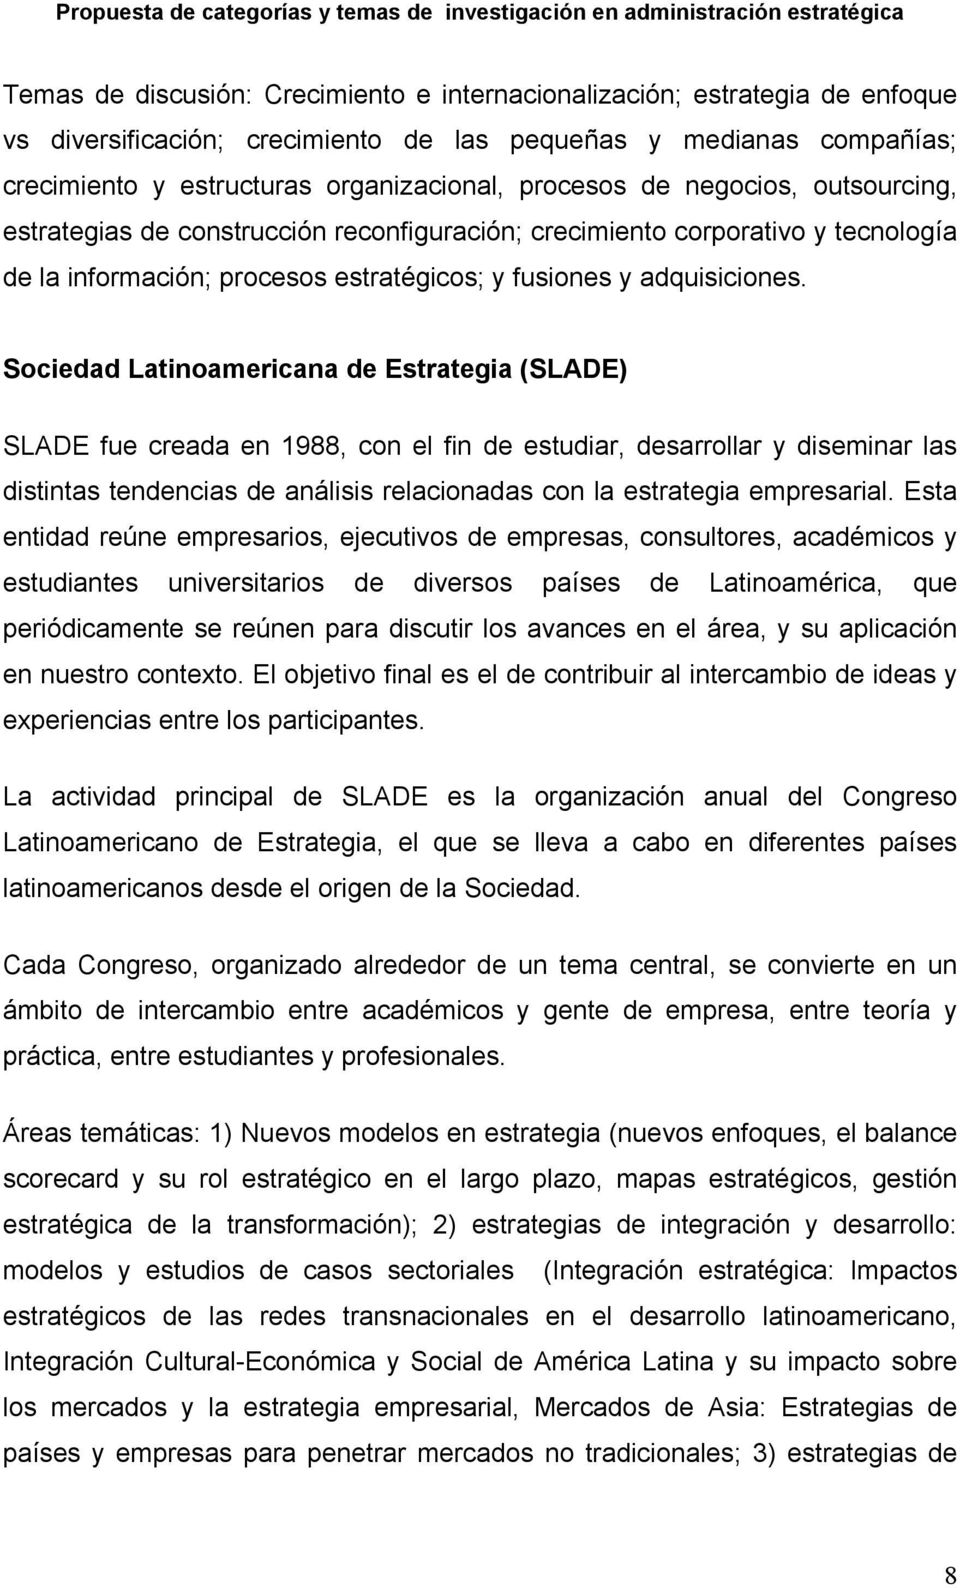 Sociedad Latinoamericana de Estrategia (SLADE) SLADE fue creada en 1988, con el fin de estudiar, desarrollar y diseminar las distintas tendencias de análisis relacionadas con la estrategia